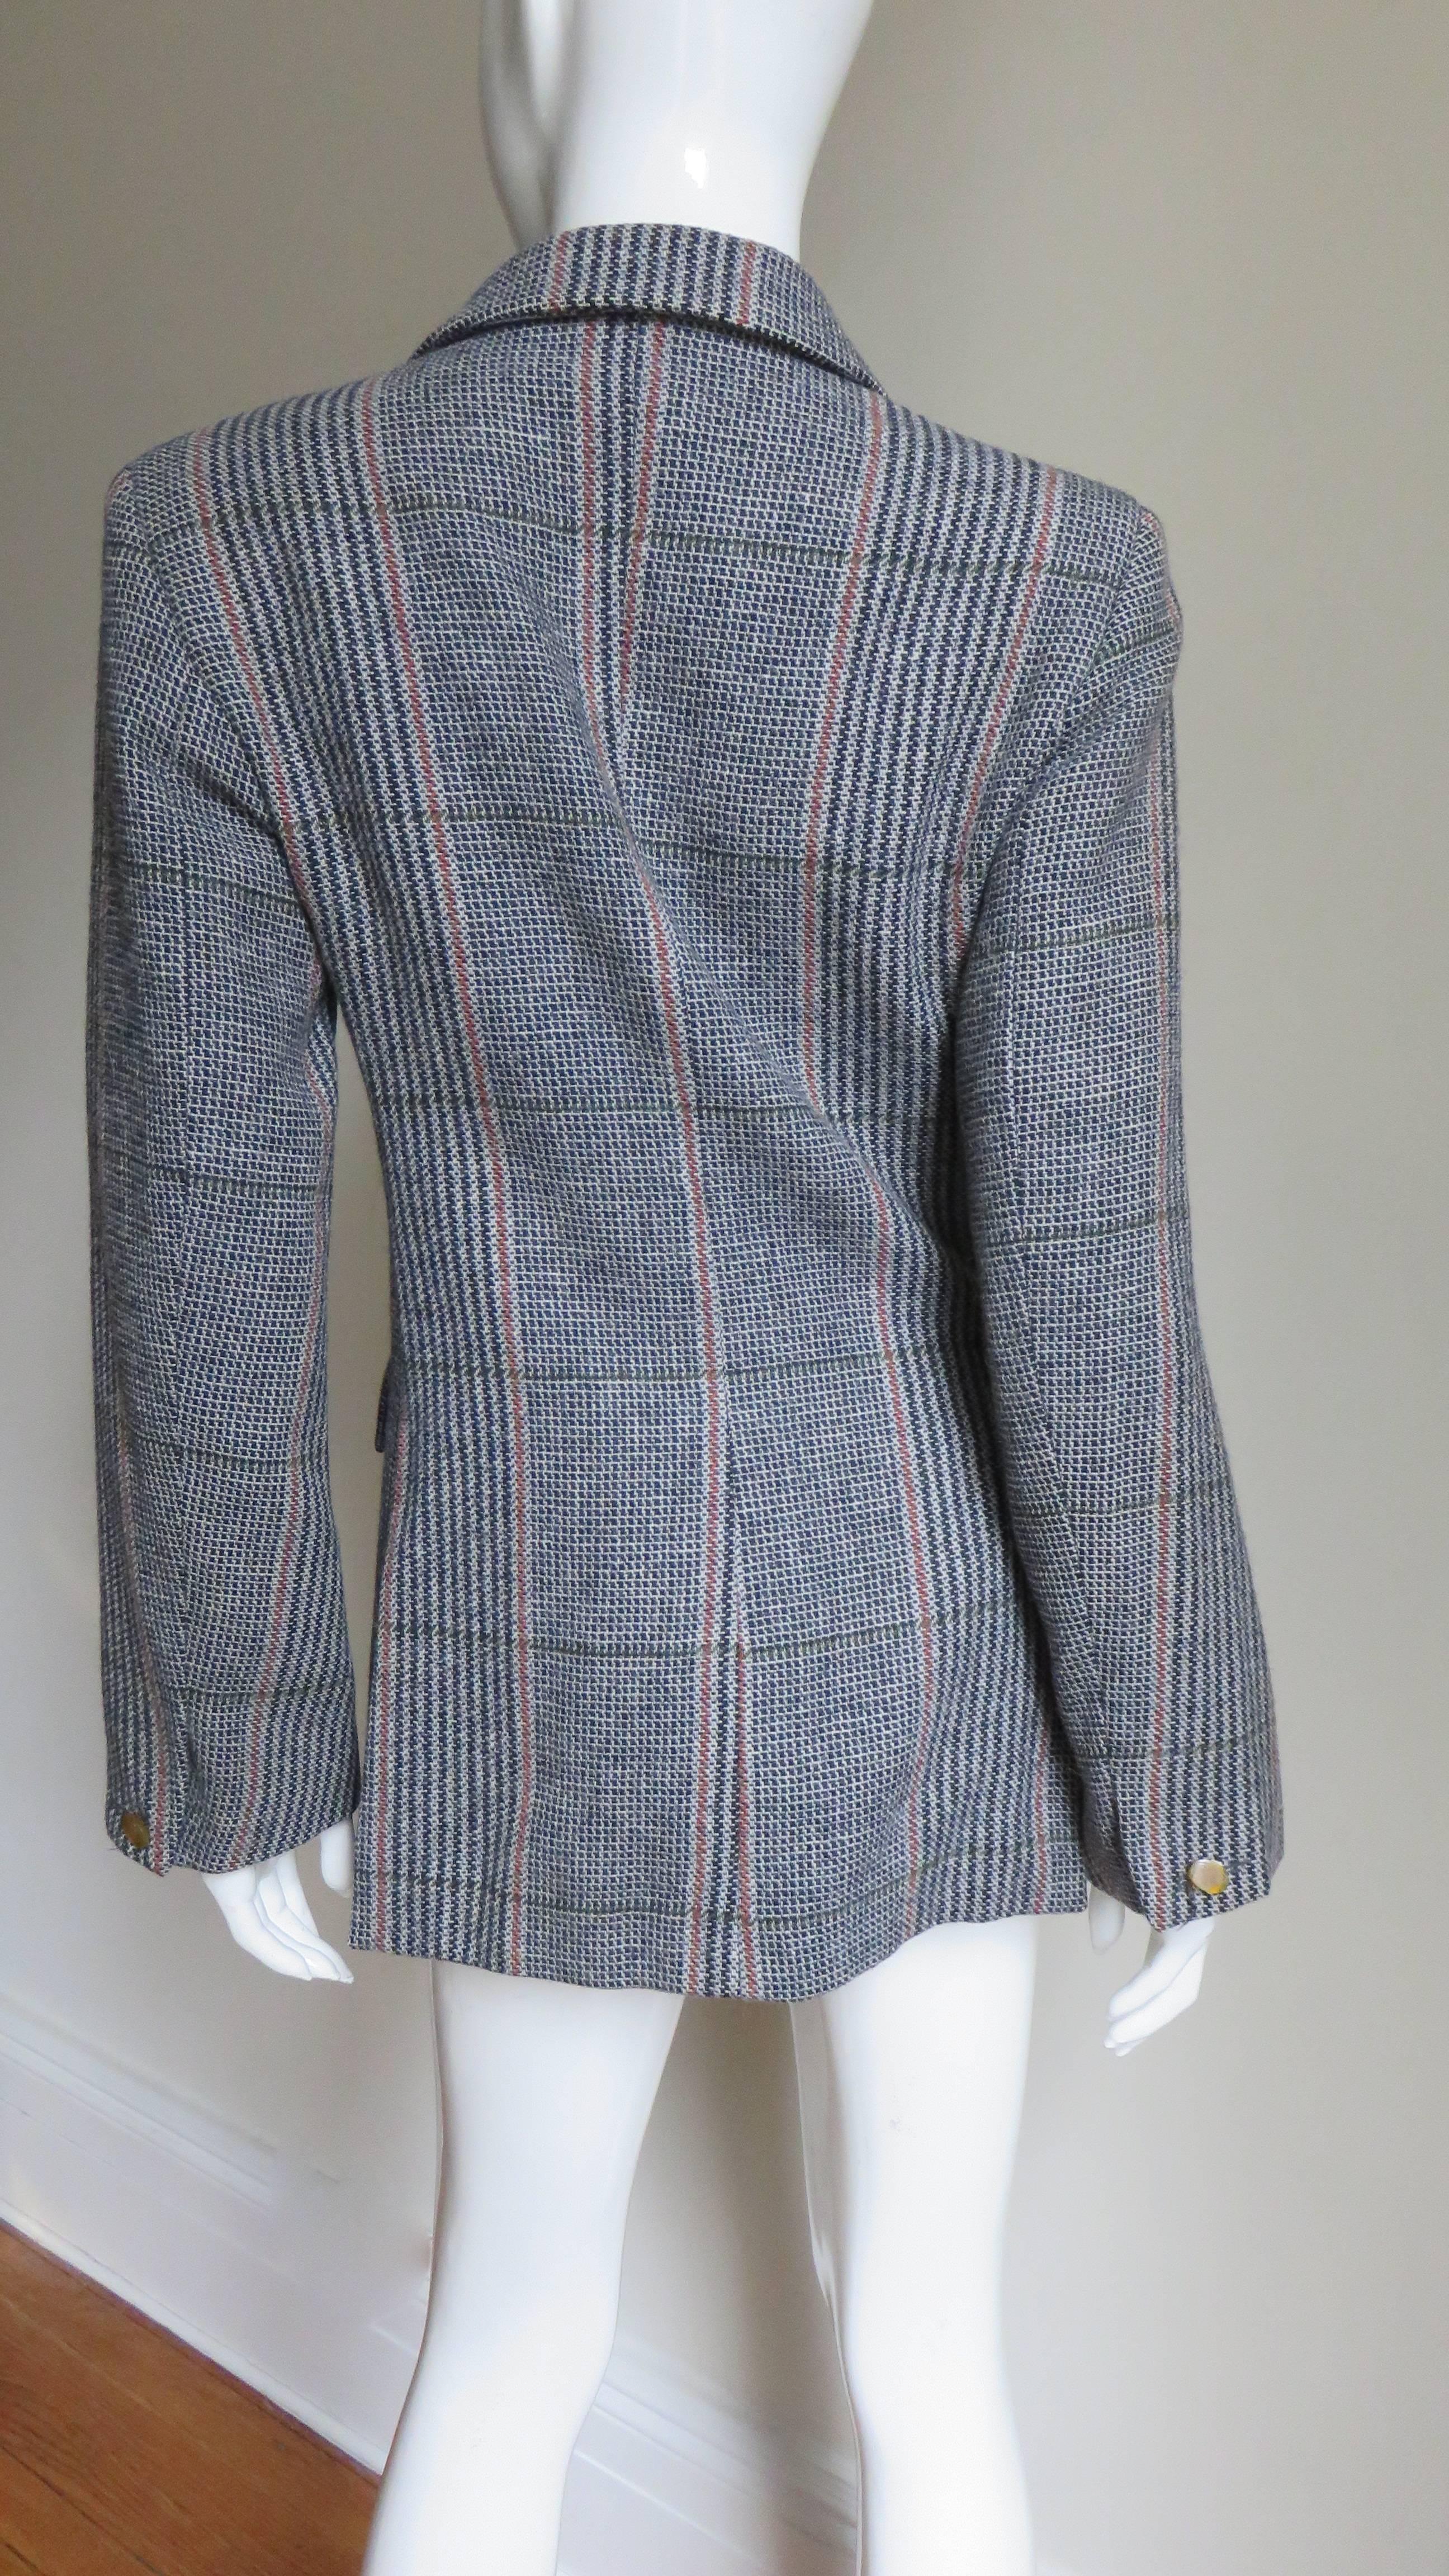  Vivienne Westwood Plaid Jacket 1990s For Sale 1